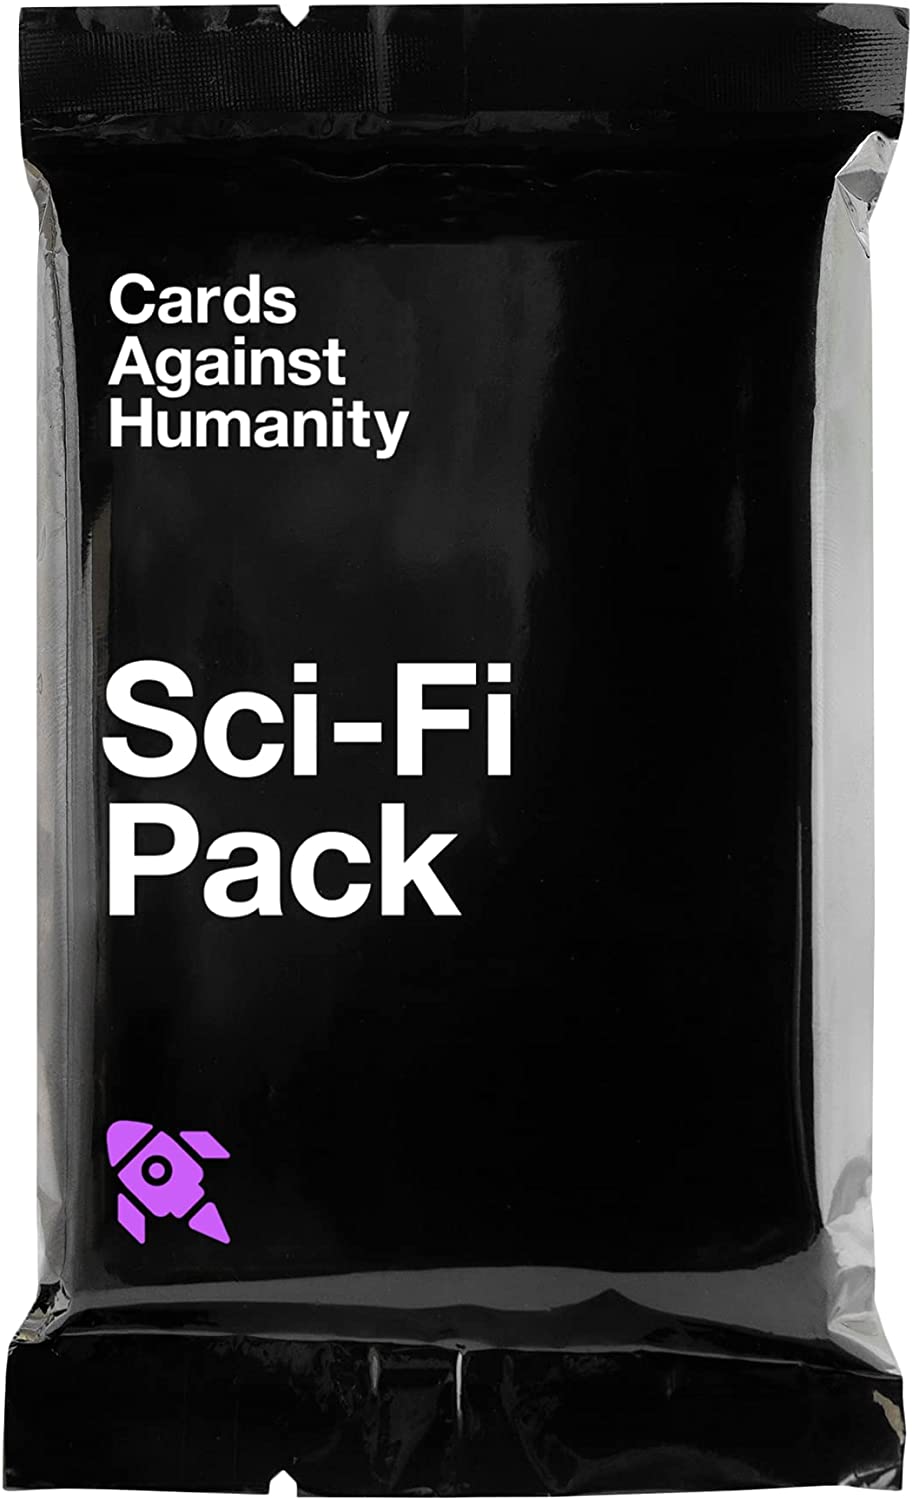 Sci-Fi Pack (Sci-Fi Pack Max Version)